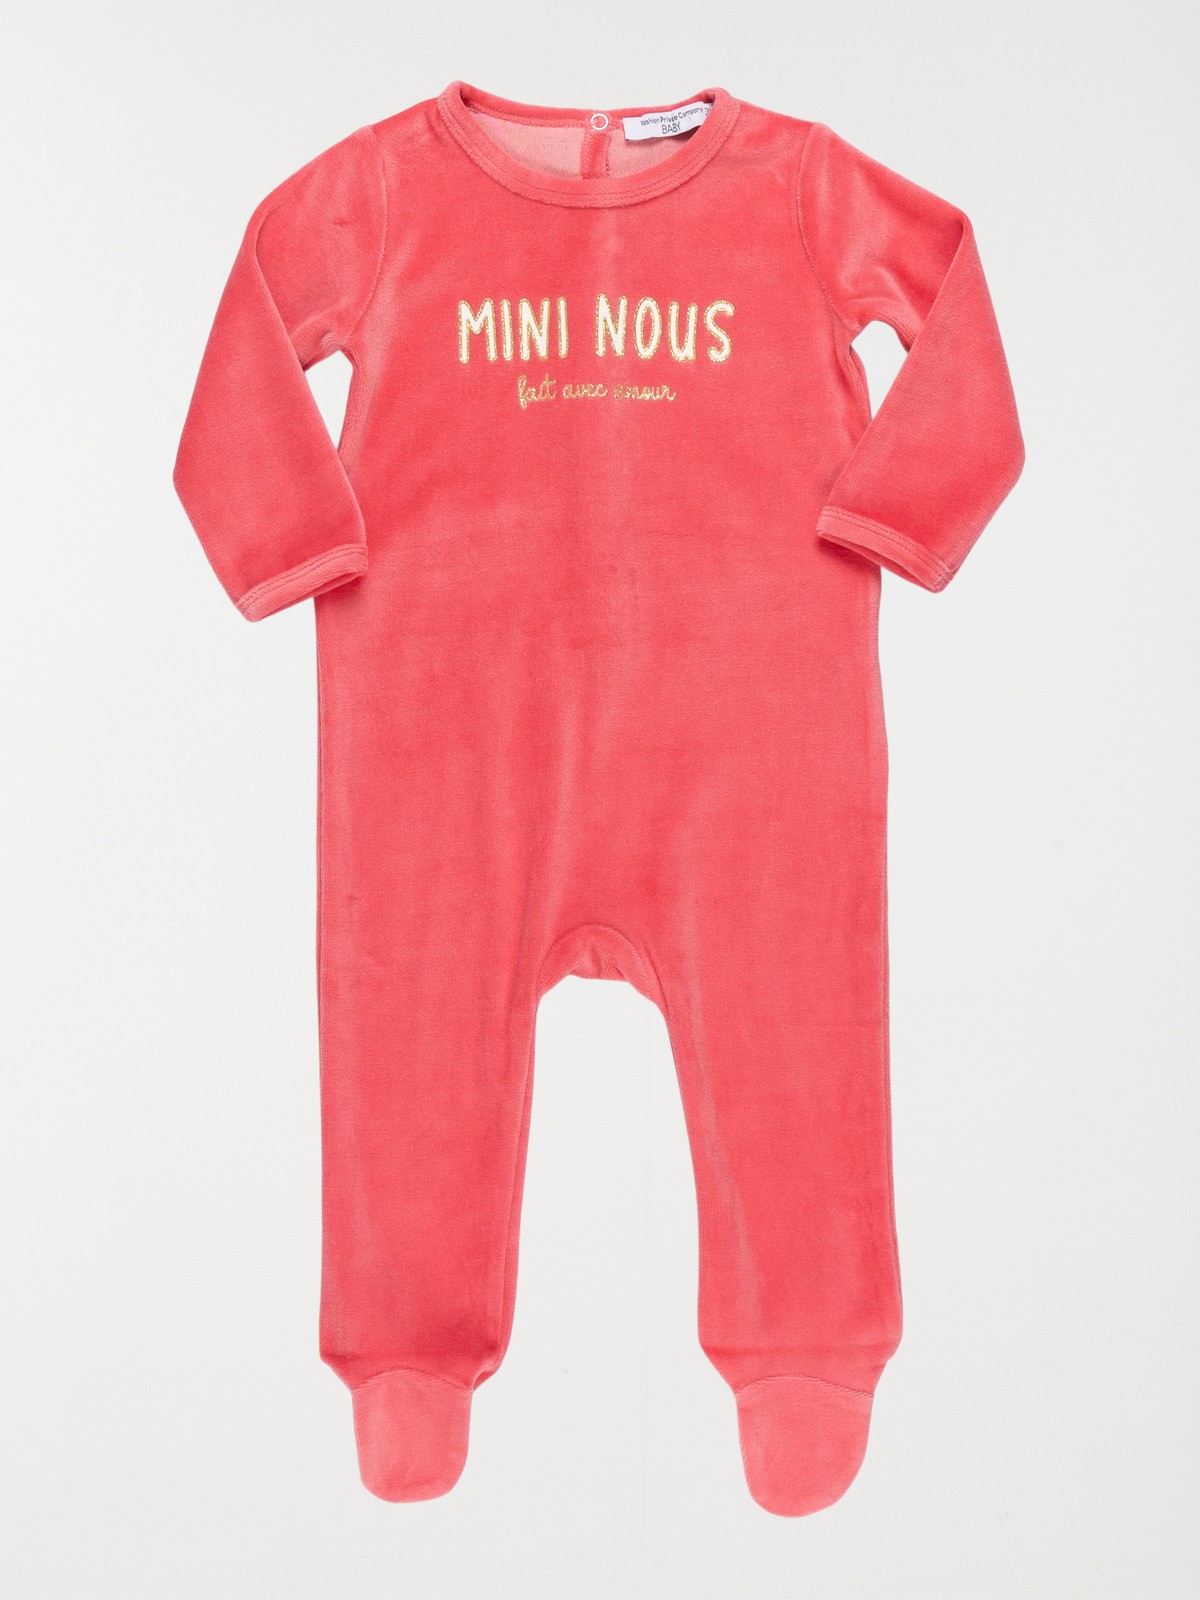 Soldes Chaussettes & Collants pour bébé - taille 6/12M - Kiabi